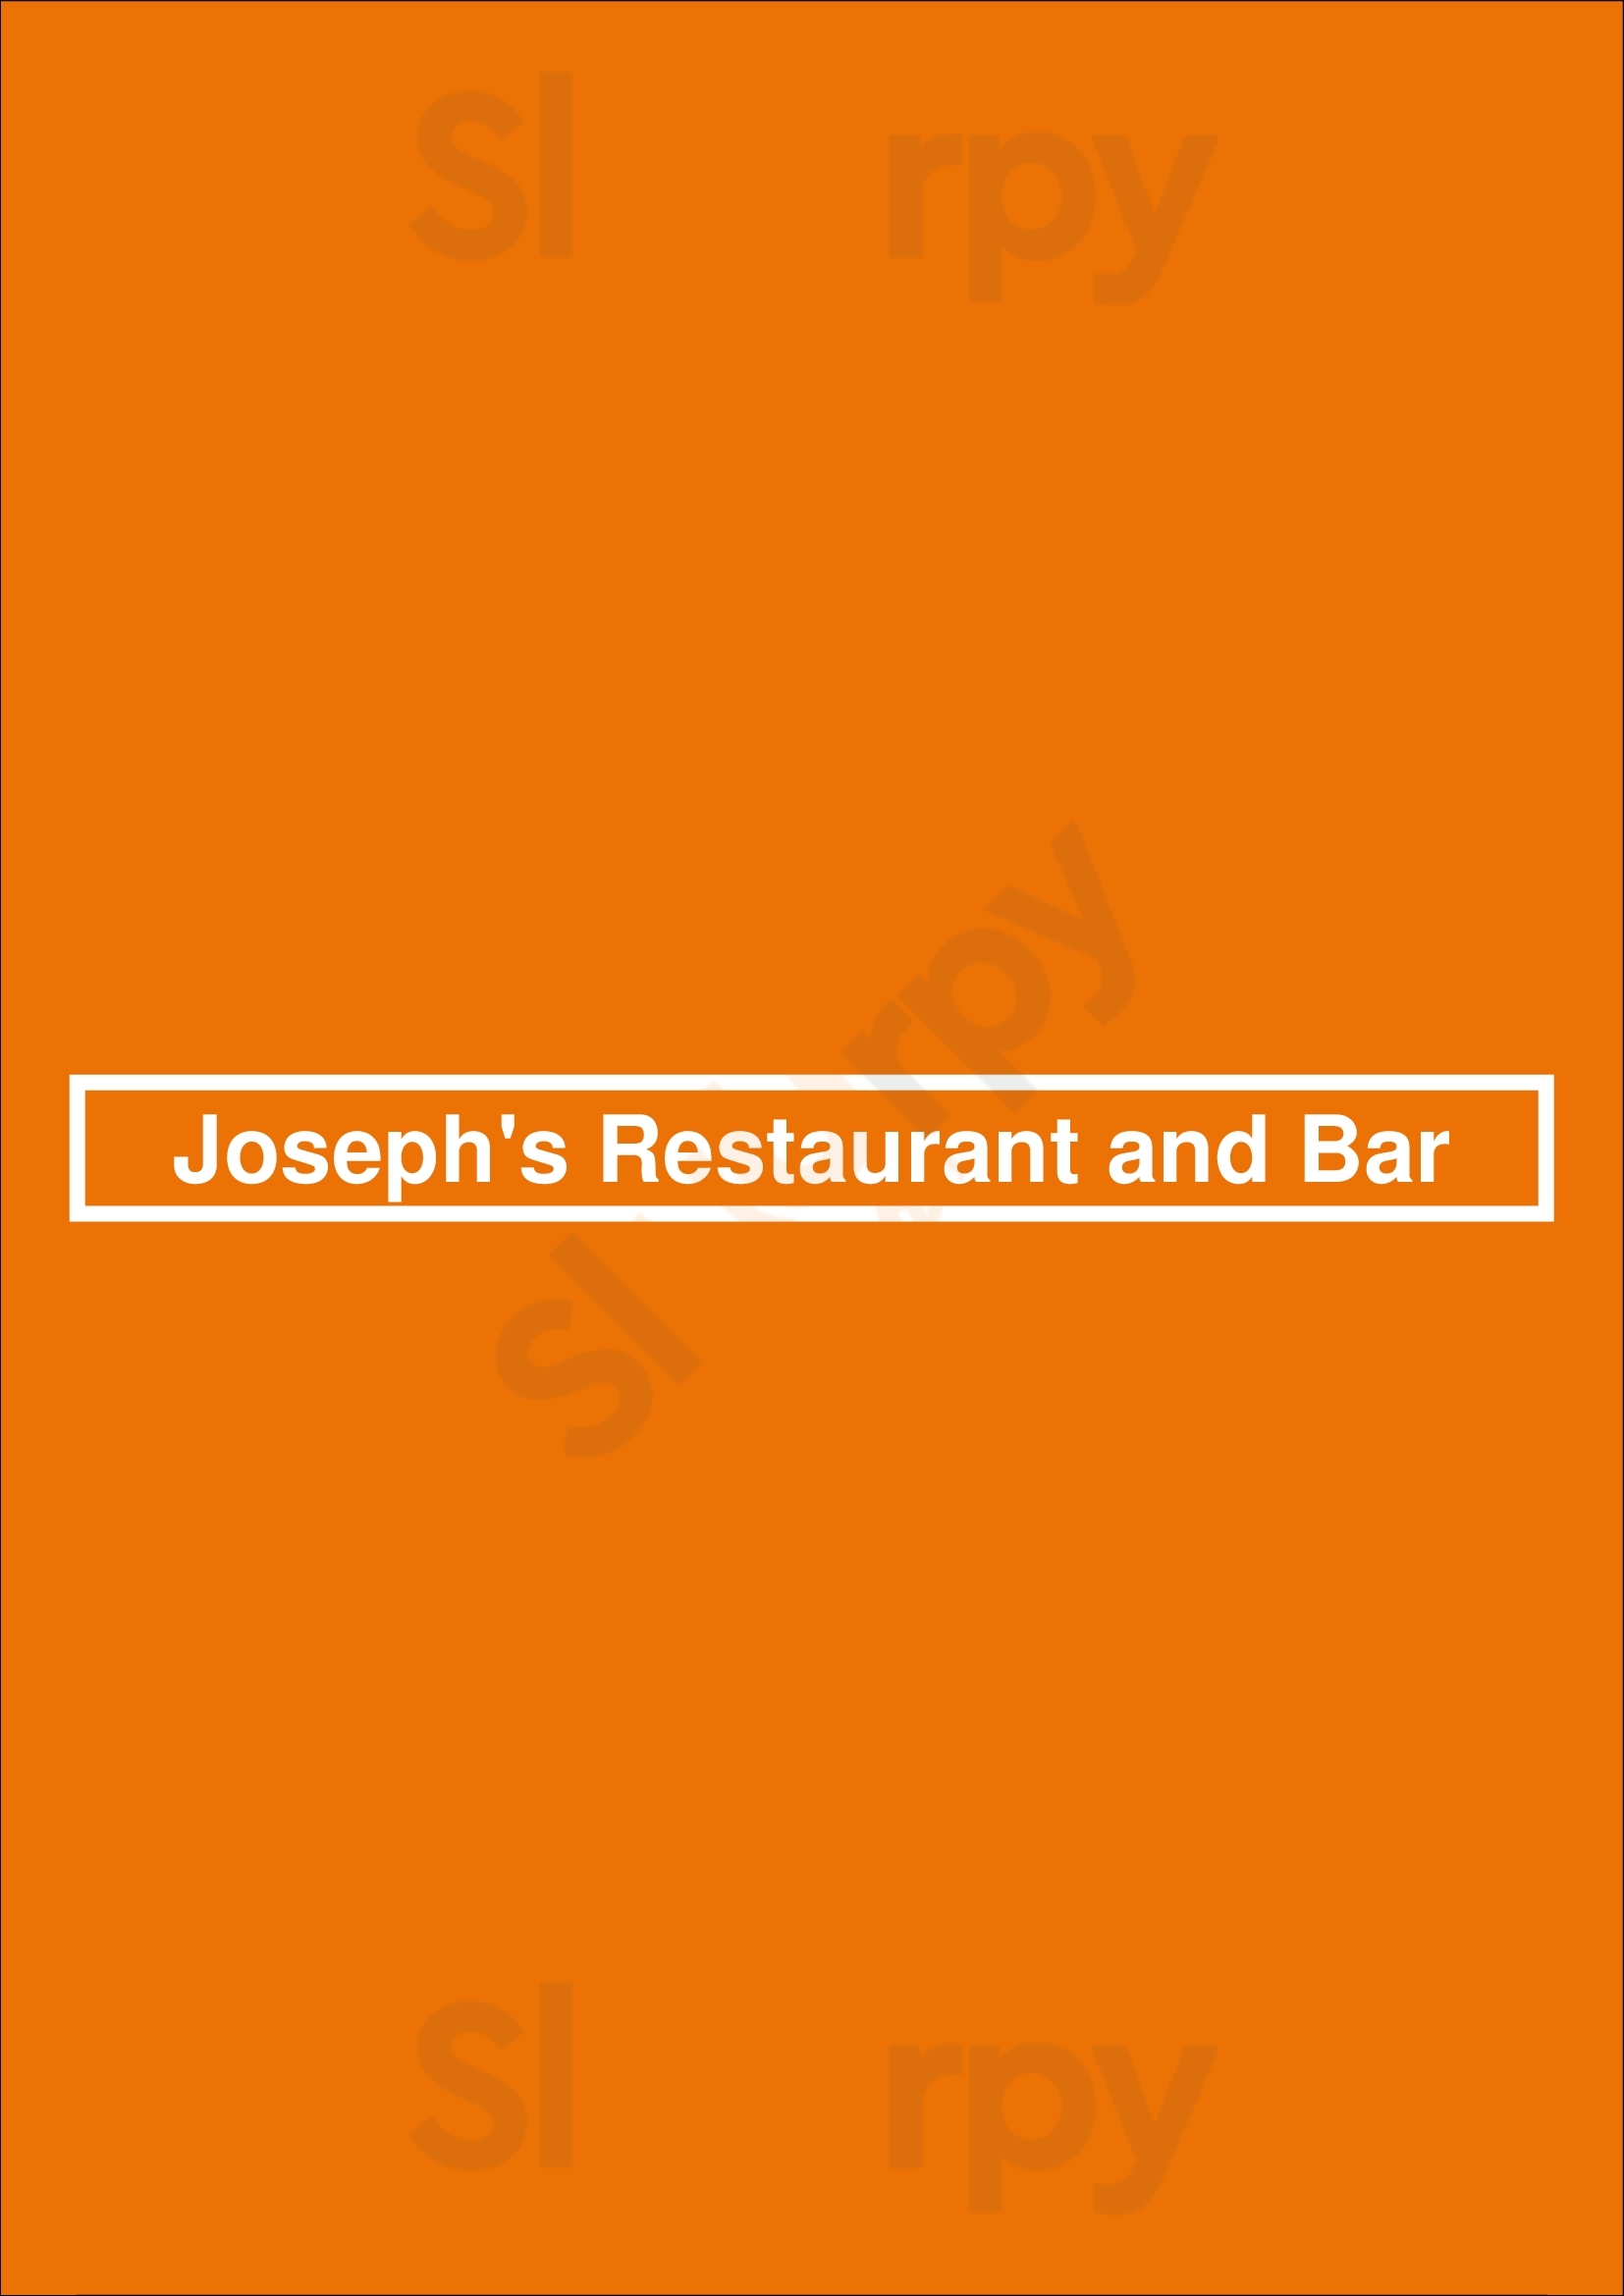 Joseph's Restaurant And Bar Chicago Menu - 1